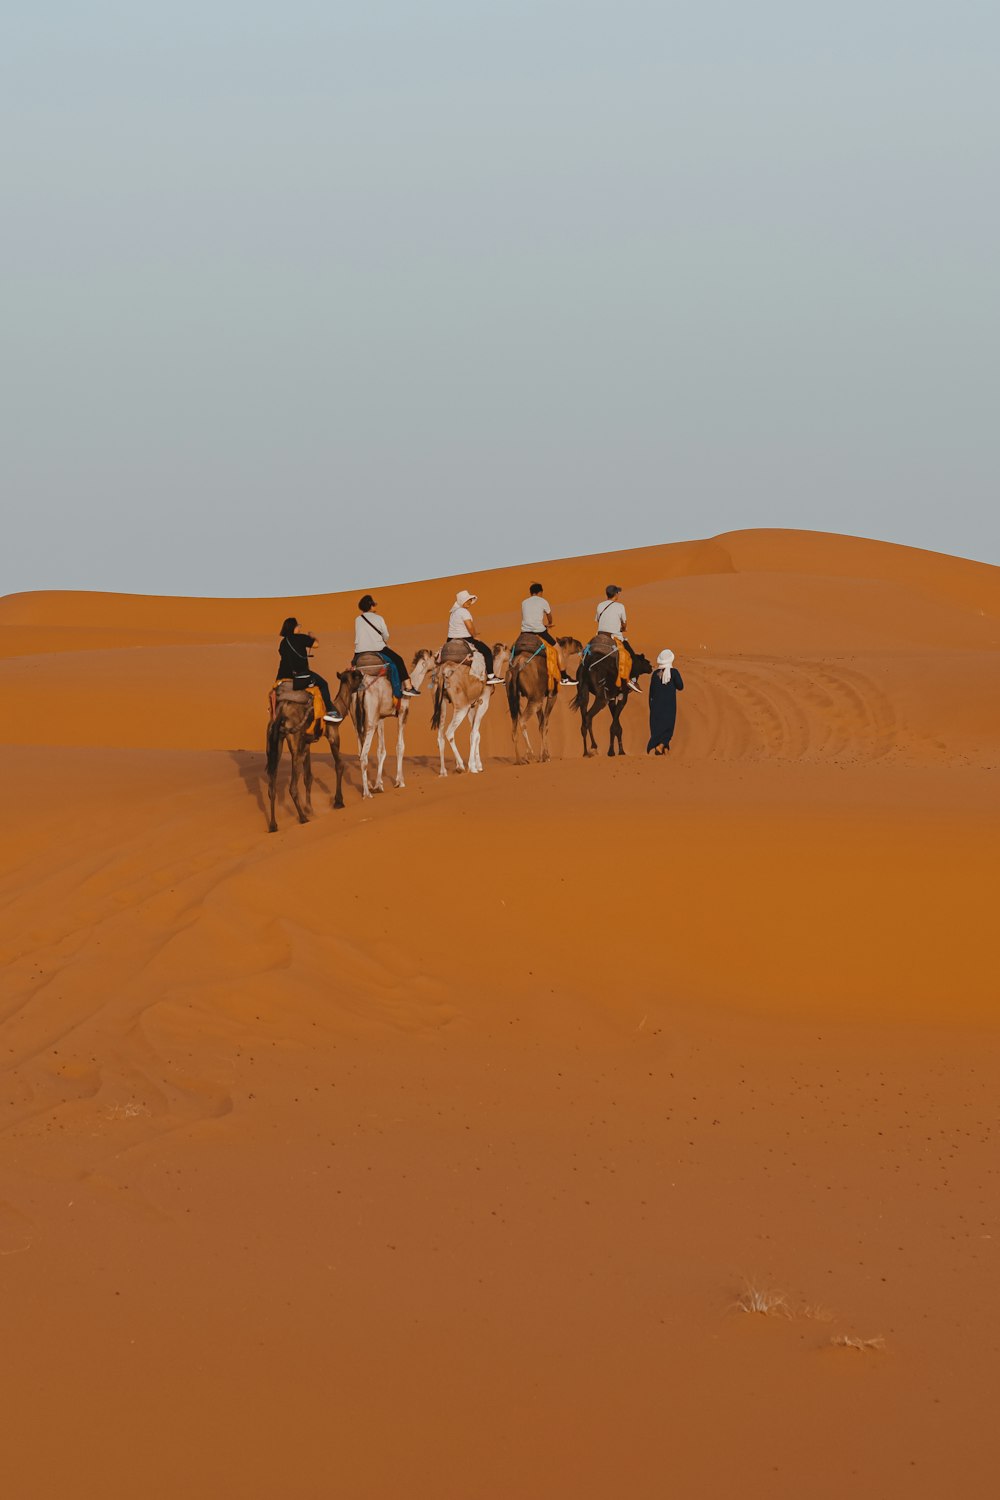 사막에서 말의 등에 타고 있는 한 무리의 사람들